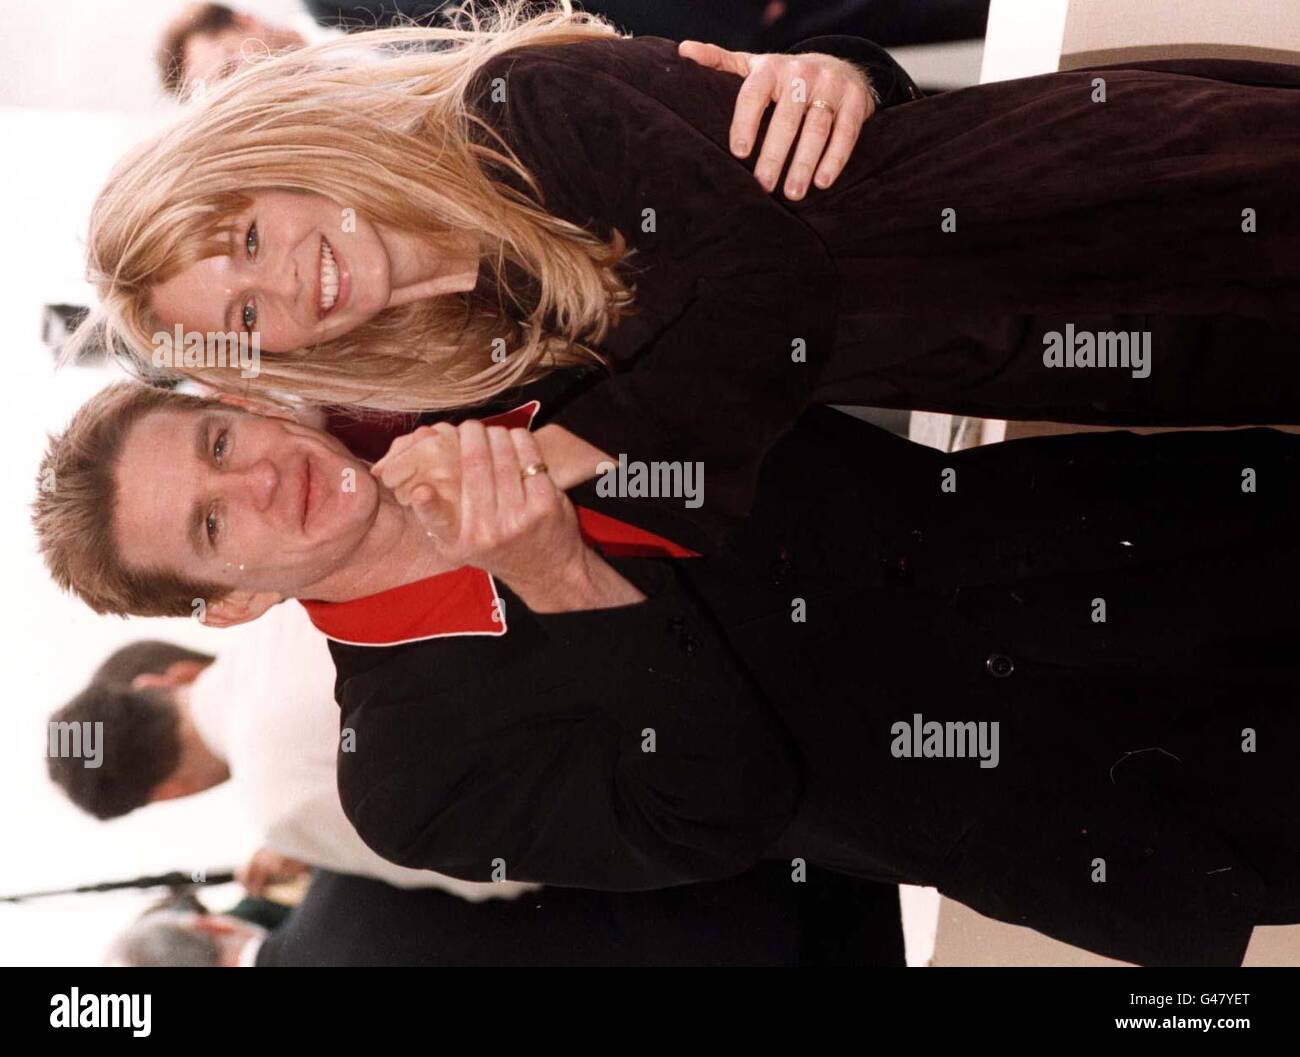 L'attore Matthew Modine e la supermodella/attrice Claudia Schiffer, durante una fotocellula per il loro nuovo film 'The Blackout' che viene presentato in anteprima al 50° Festival di Cannes. Foto Stock